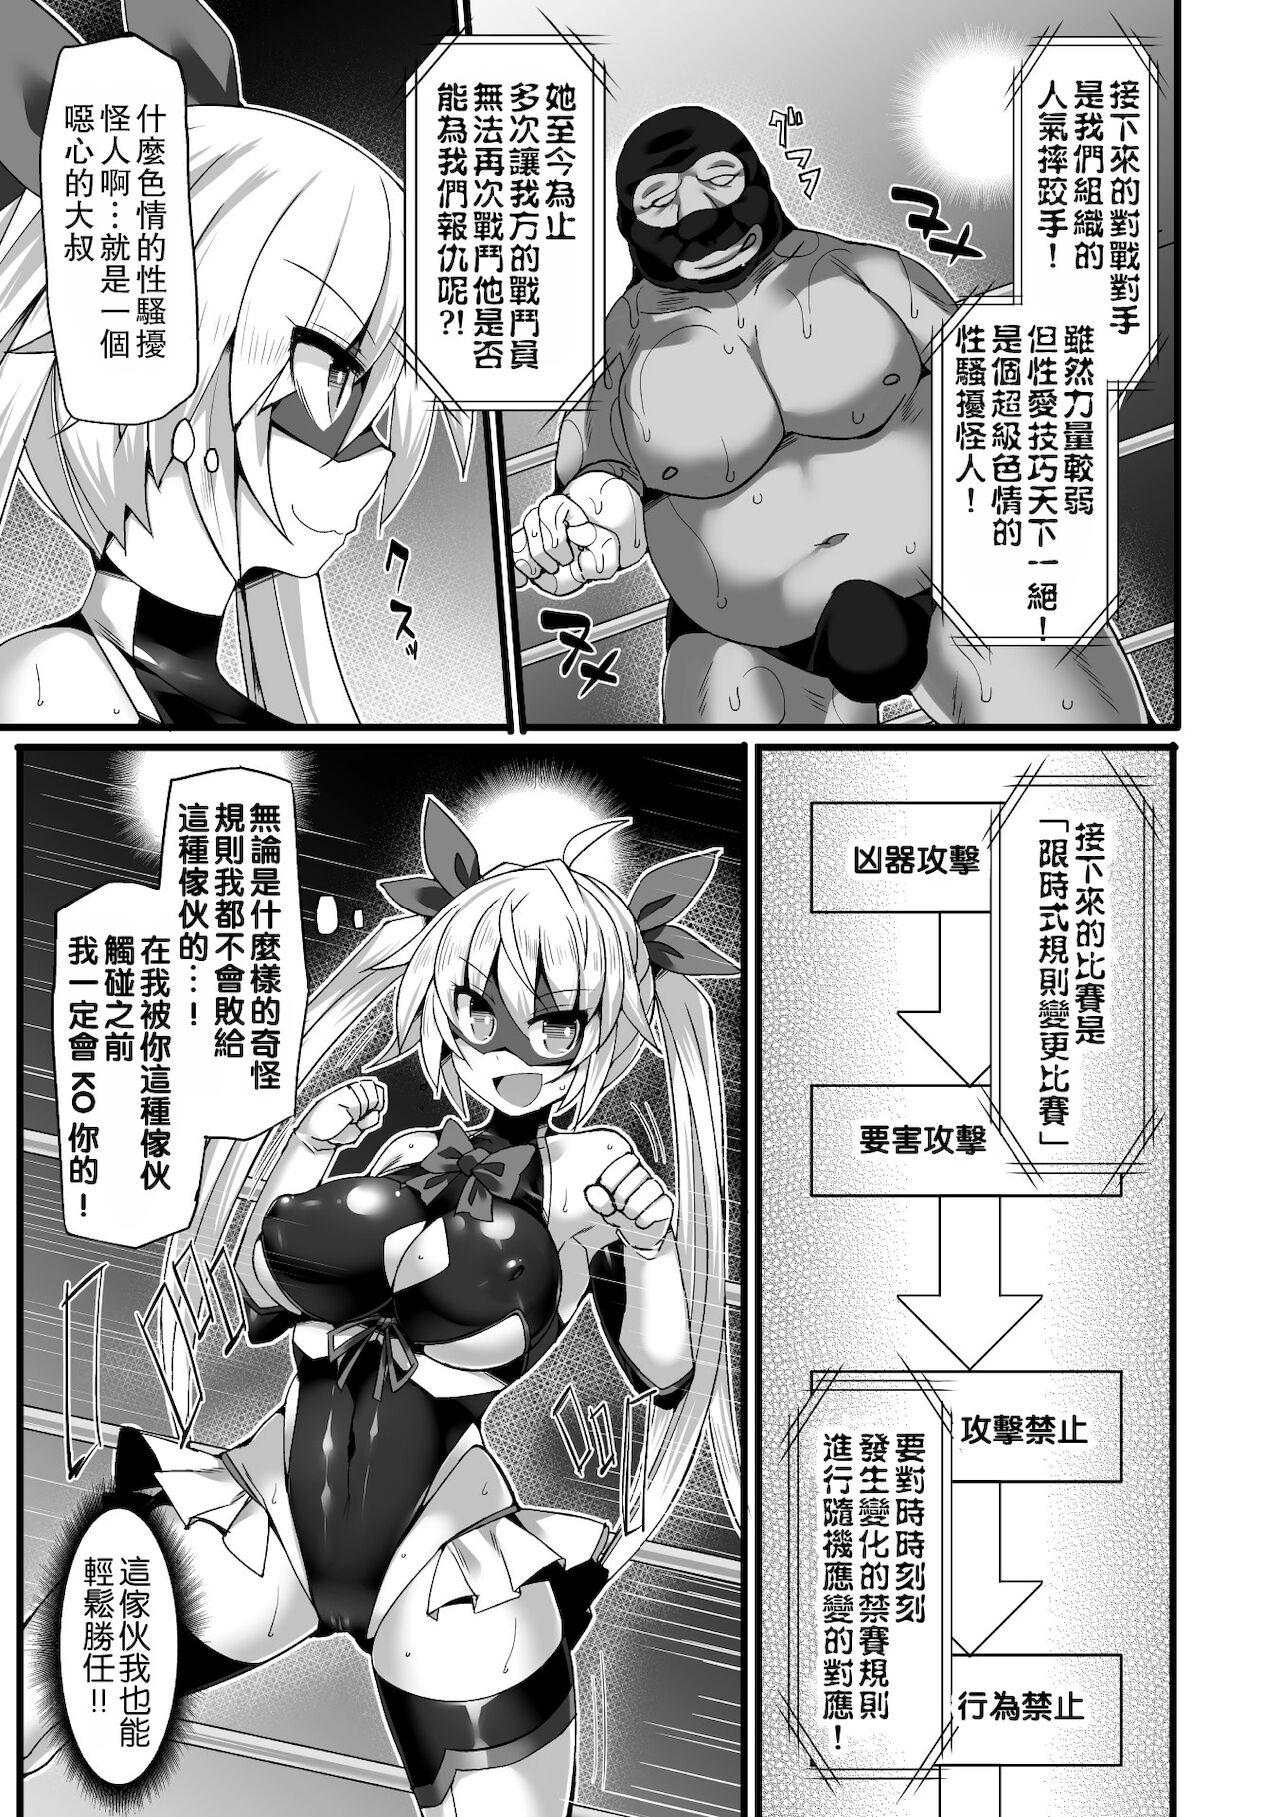 Piss Uruwashi no Kamen Toushi Angel Rumina Henshin Kaijo e Zako Heroine-ka! Gets - Page 4